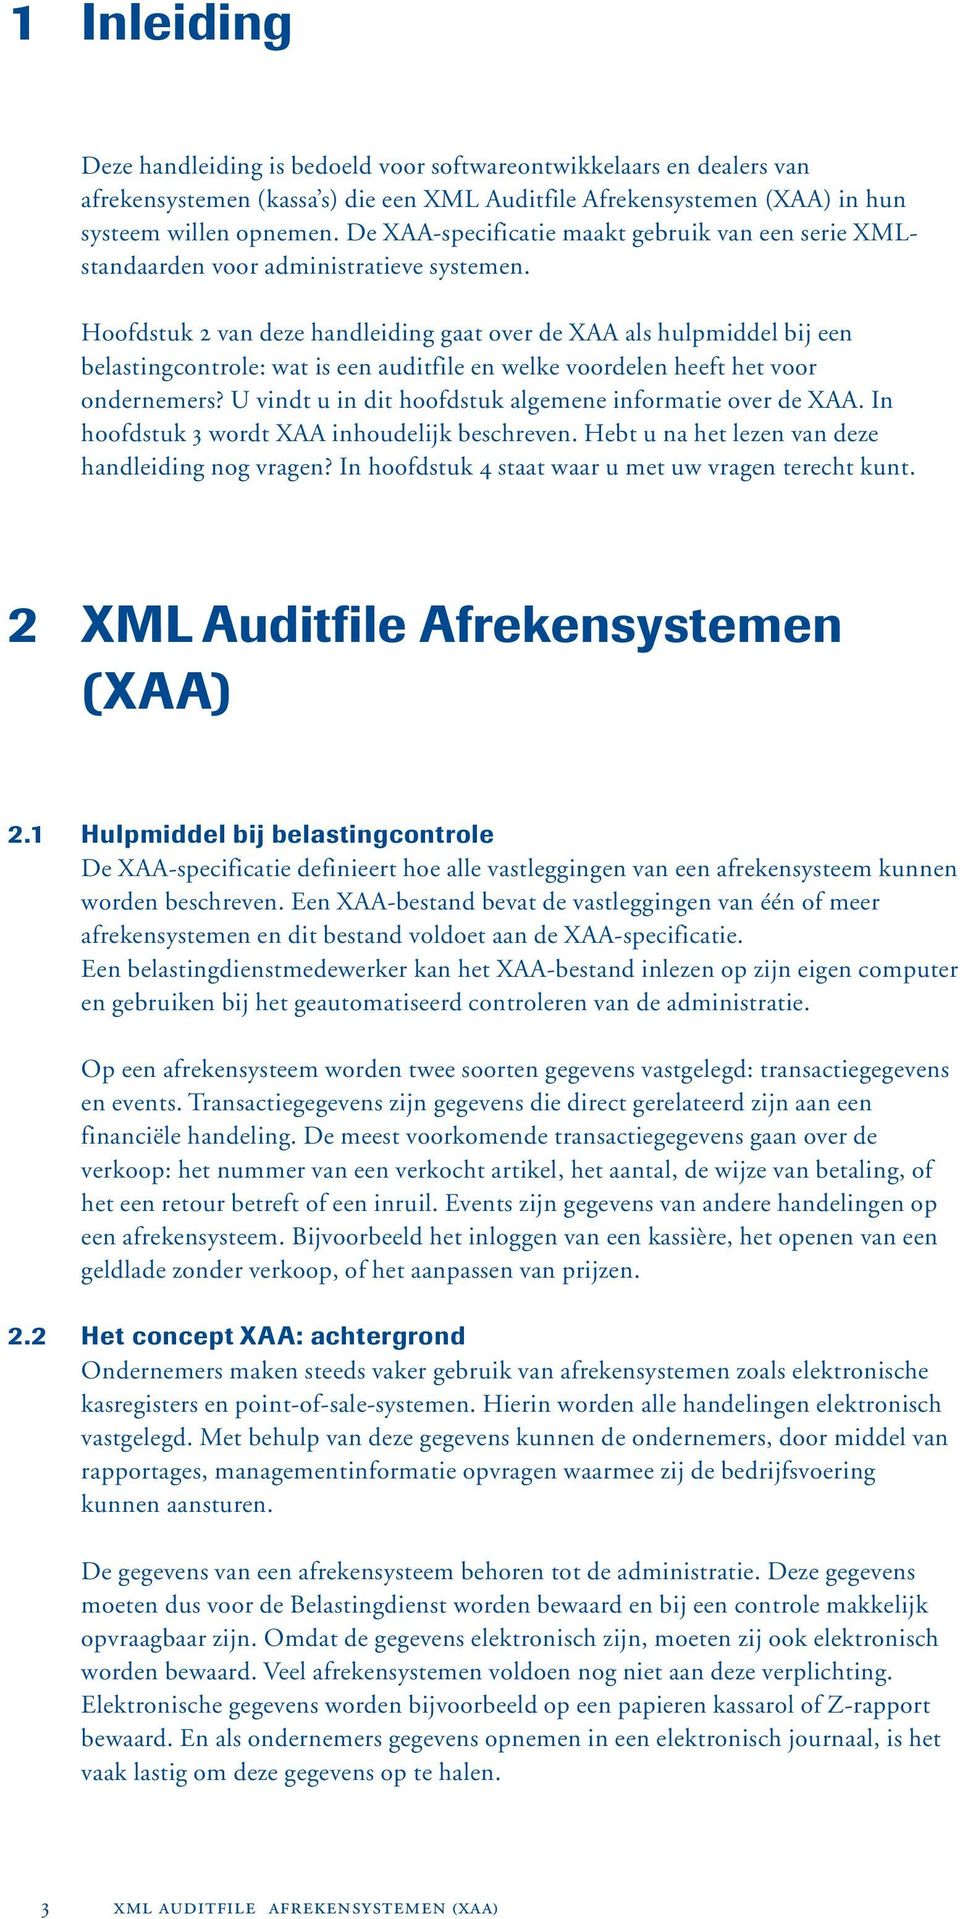 Hoofdstuk 2 van deze handleiding gaat over de XAA als hulpmiddel bij een belastingcontrole: wat is een auditfile en welke voordelen heeft het voor ondernemers?